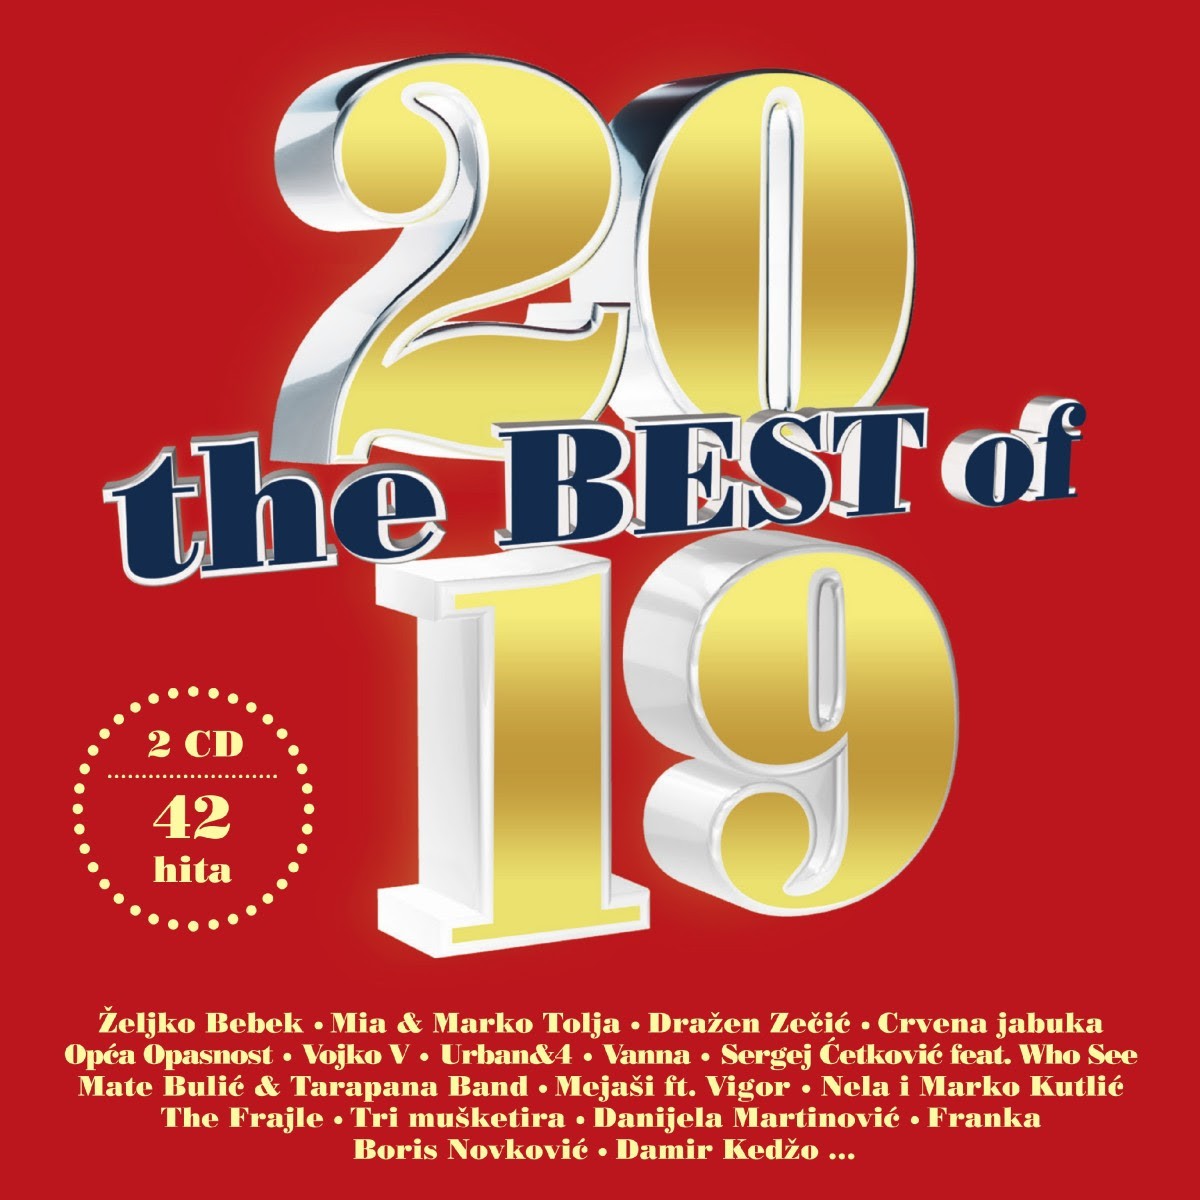 42 najveća hita 2019. godine na dvostrukoj CD kompilaciji “The Best of 2019.”